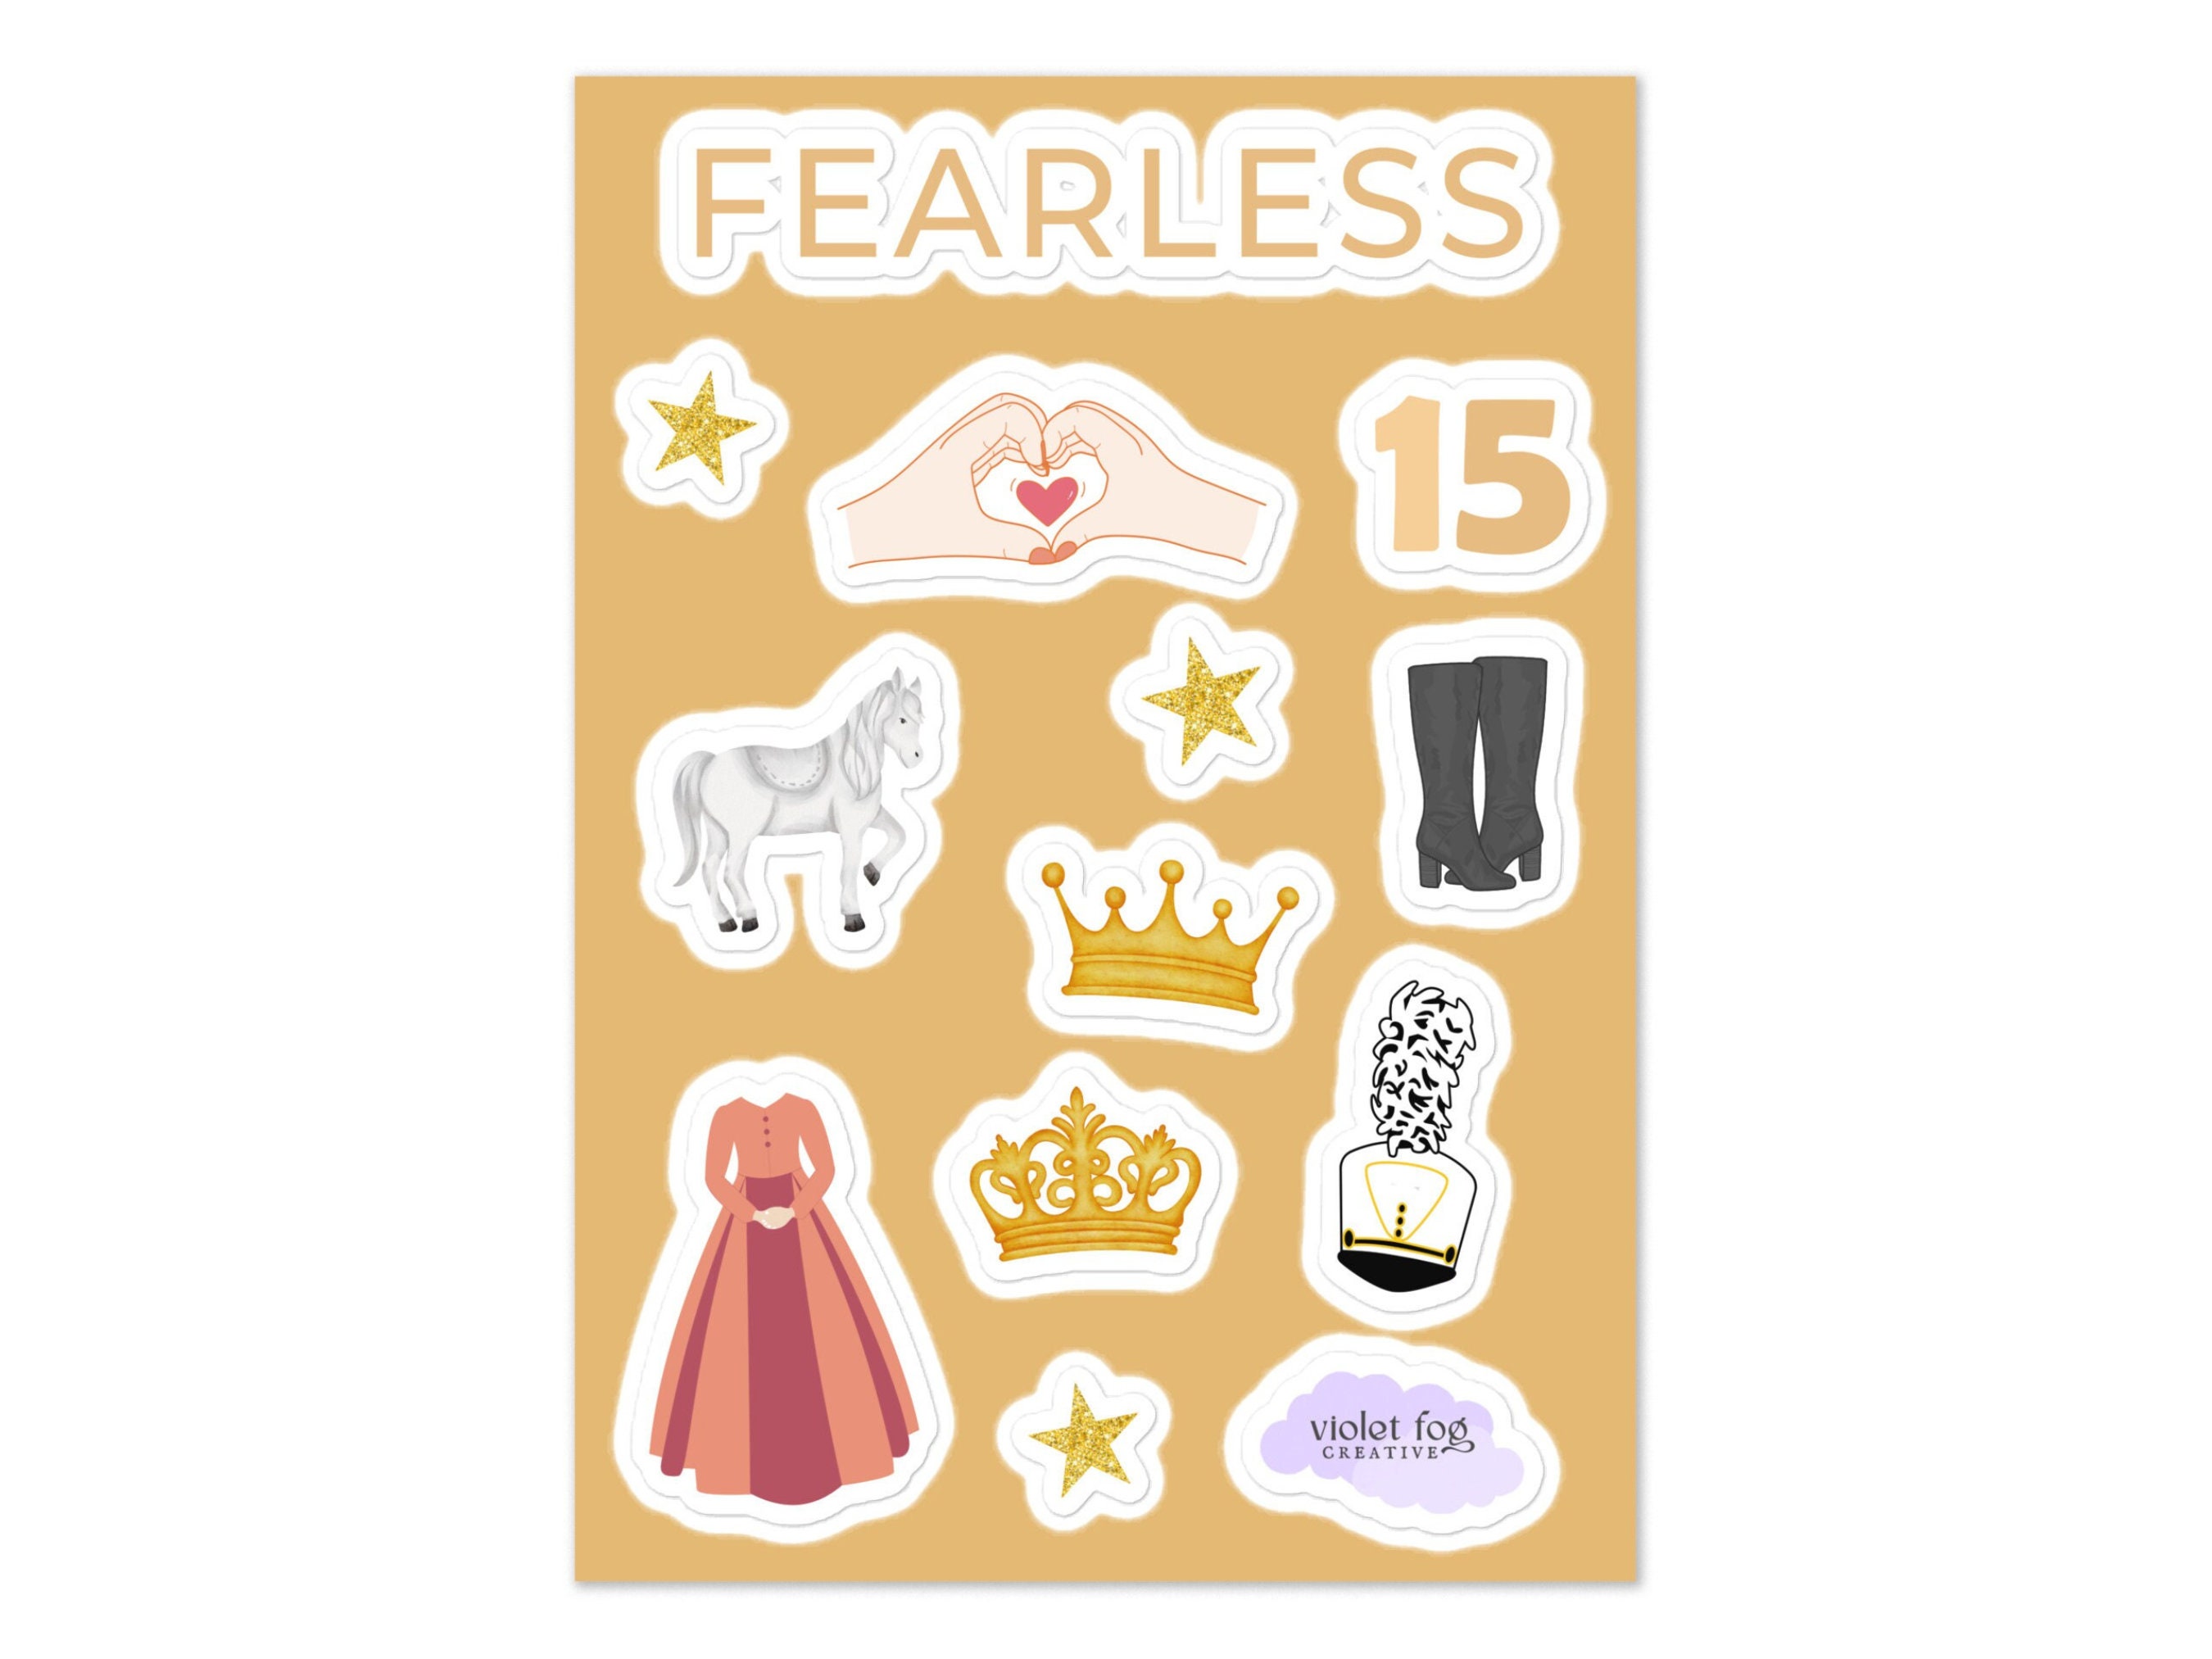 taylor swift fearless eras tour art Sticker for Sale by nerfie  Taylor  swift fearless, Taylor swift, Sticker design inspiration